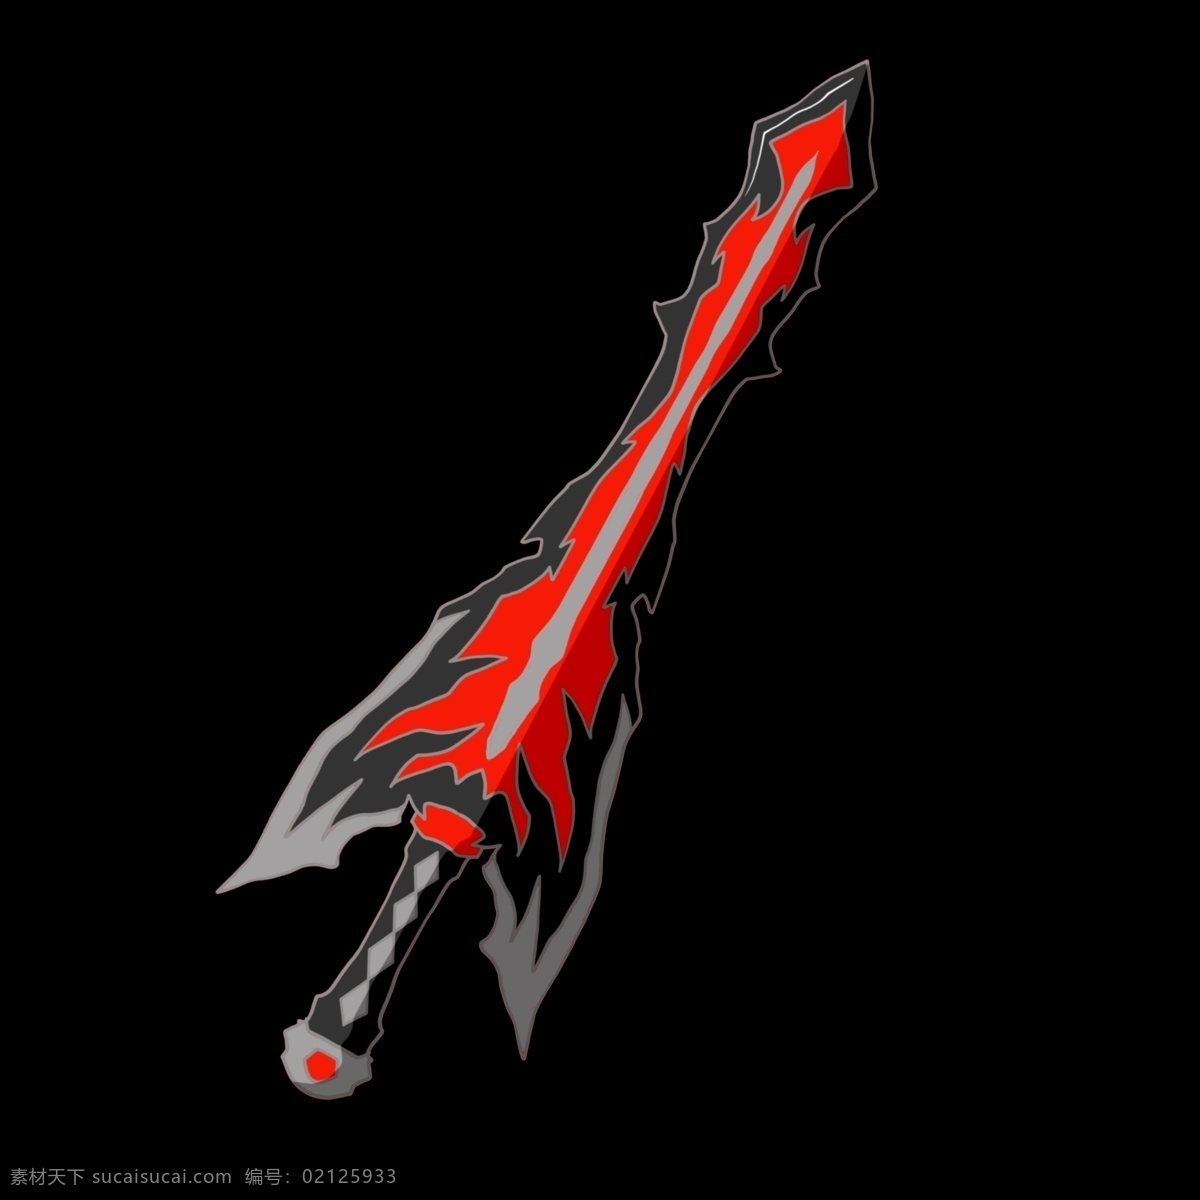 红色 宝剑 装饰 插画 红色的宝剑 漂亮的宝剑 宝剑装饰 宝剑插画 立体宝剑 锋利的宝剑 古风宝剑